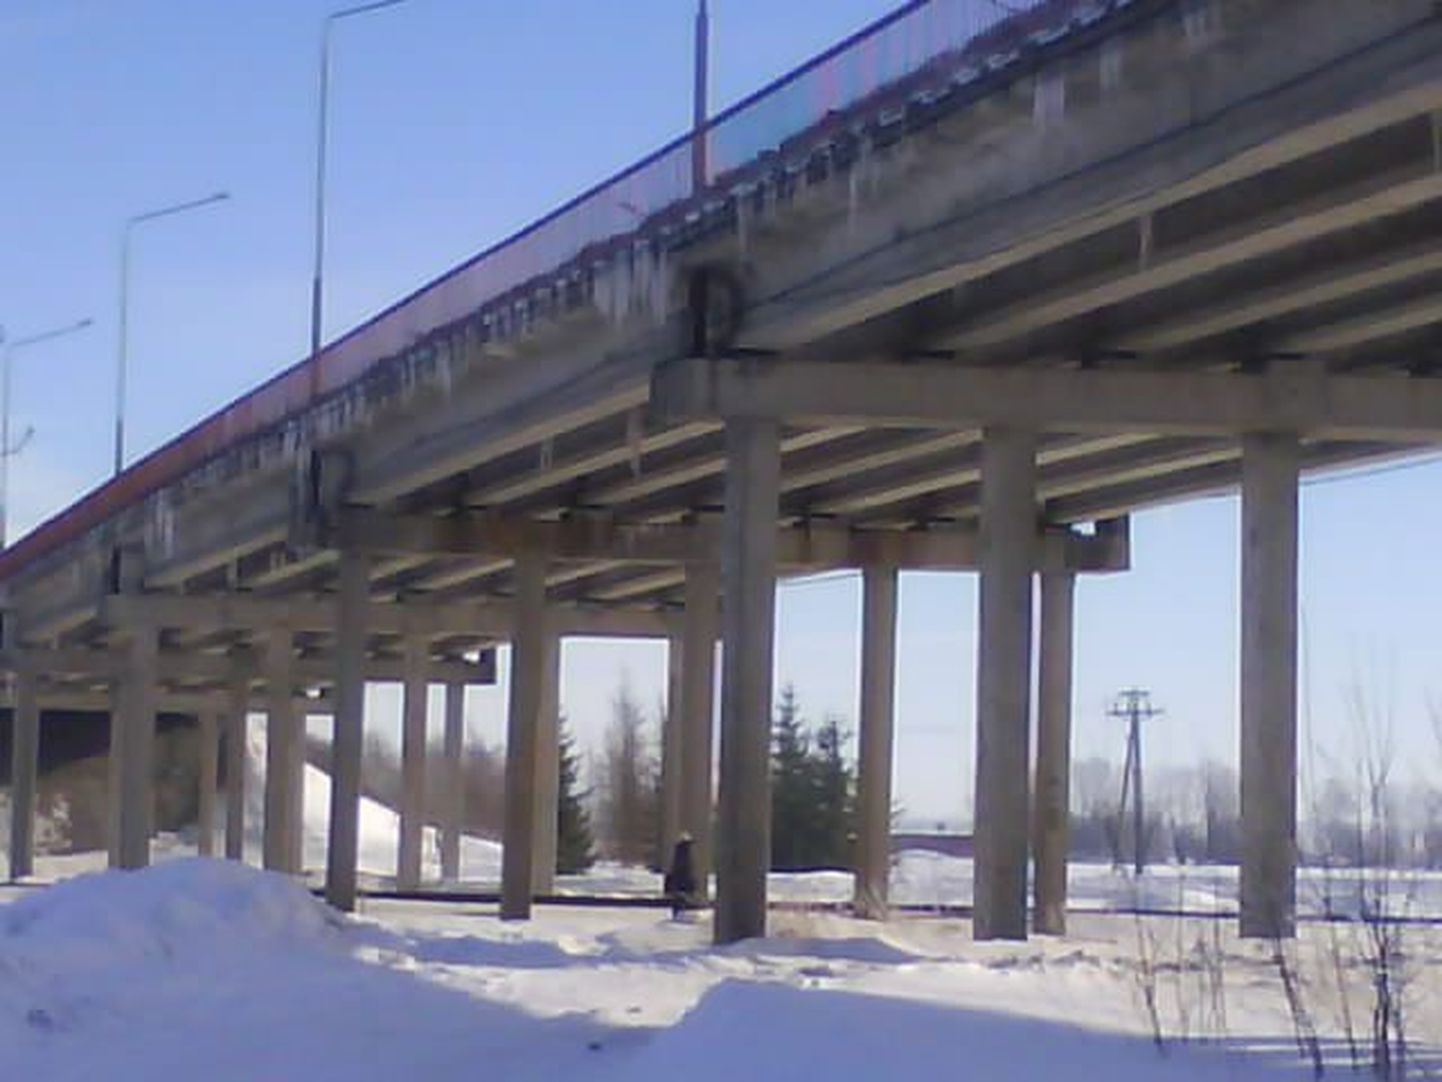 Arvukalt erineva suurusega jääpurikaid ripub Jõgeva raudteeviadukti küljes. Silla alt lähevad läbi nii kõnni-, sõidu- kui raudtee.